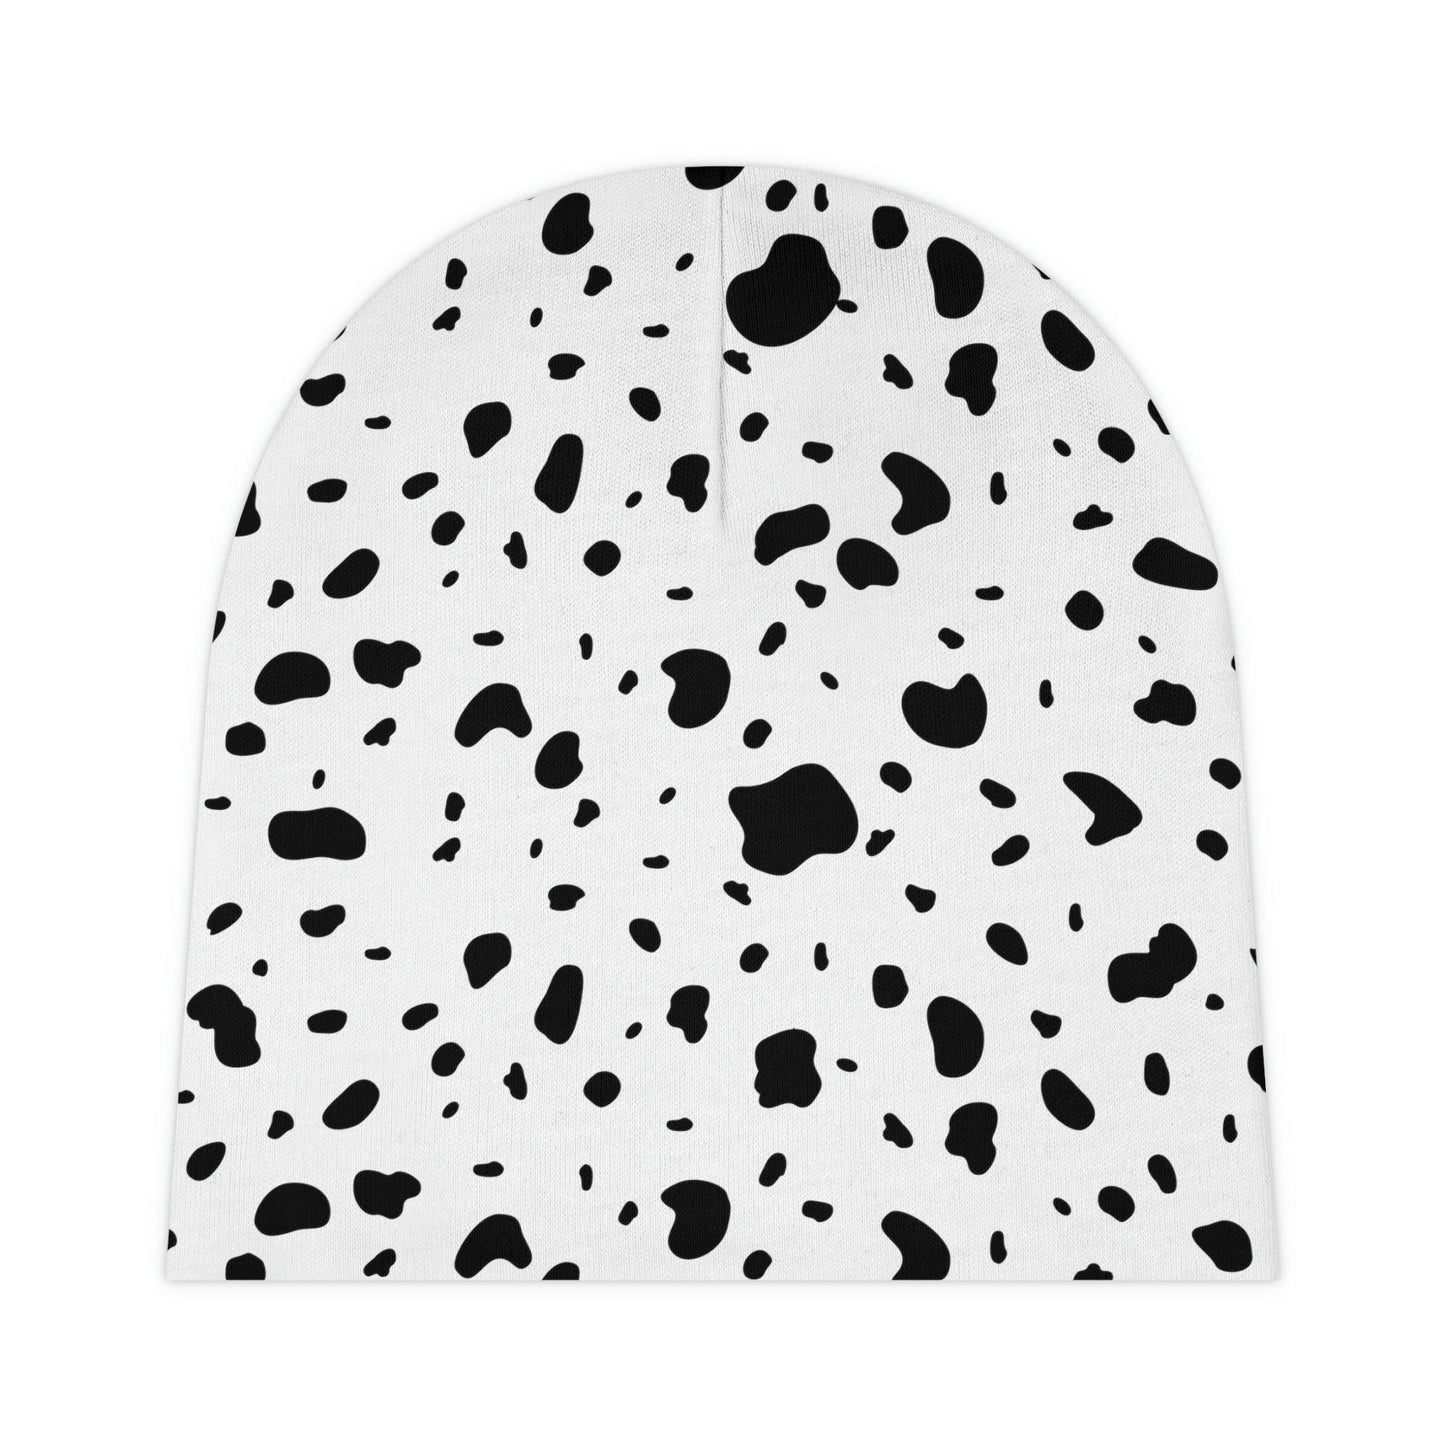 Dalmatian Print Baby Hat - BentleyBlueCo